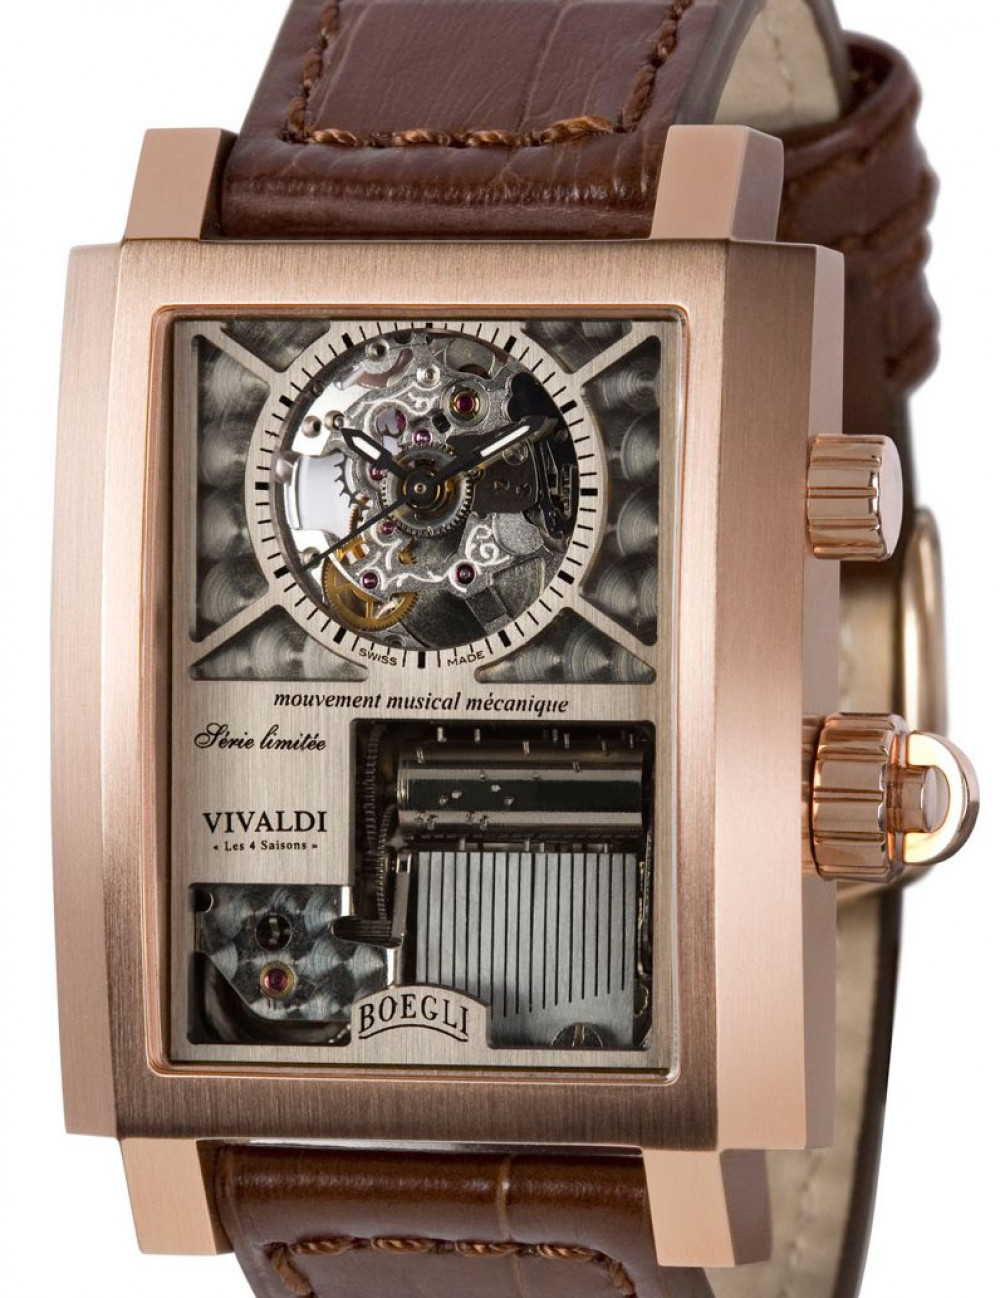 Zegarek firmy Boegli, model Classic Rock